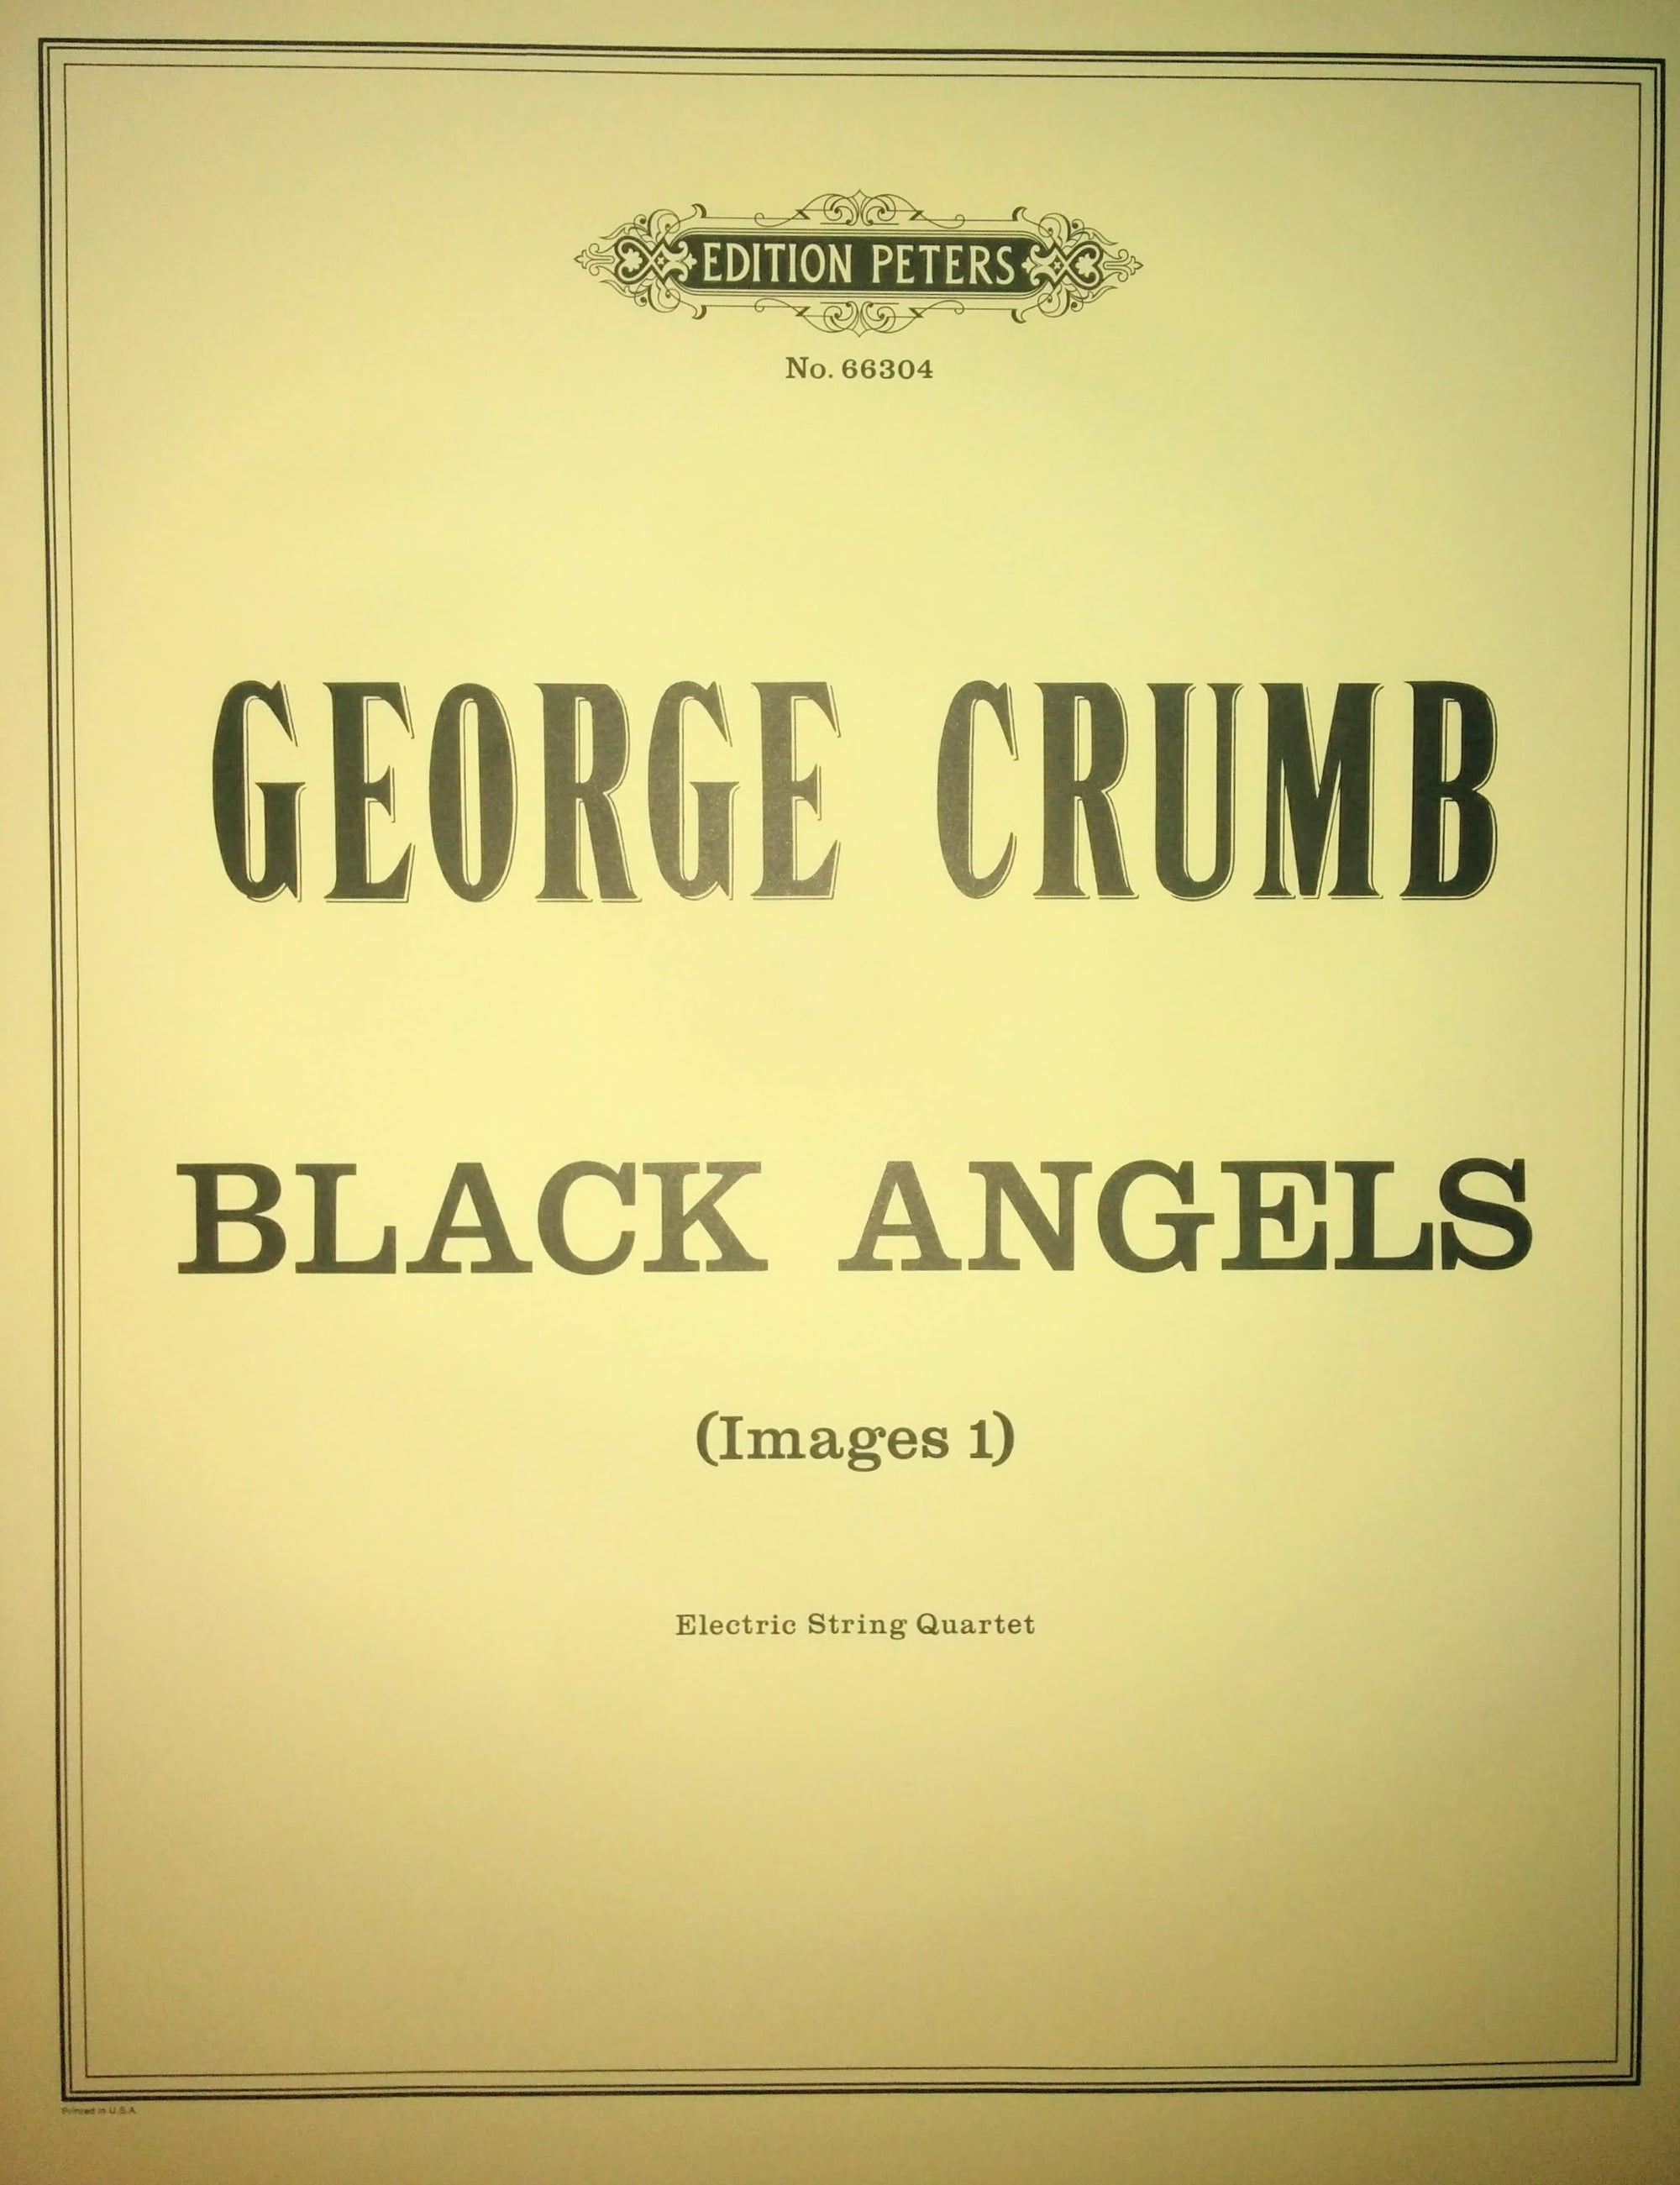 Crumb: Black Angels (Images I)